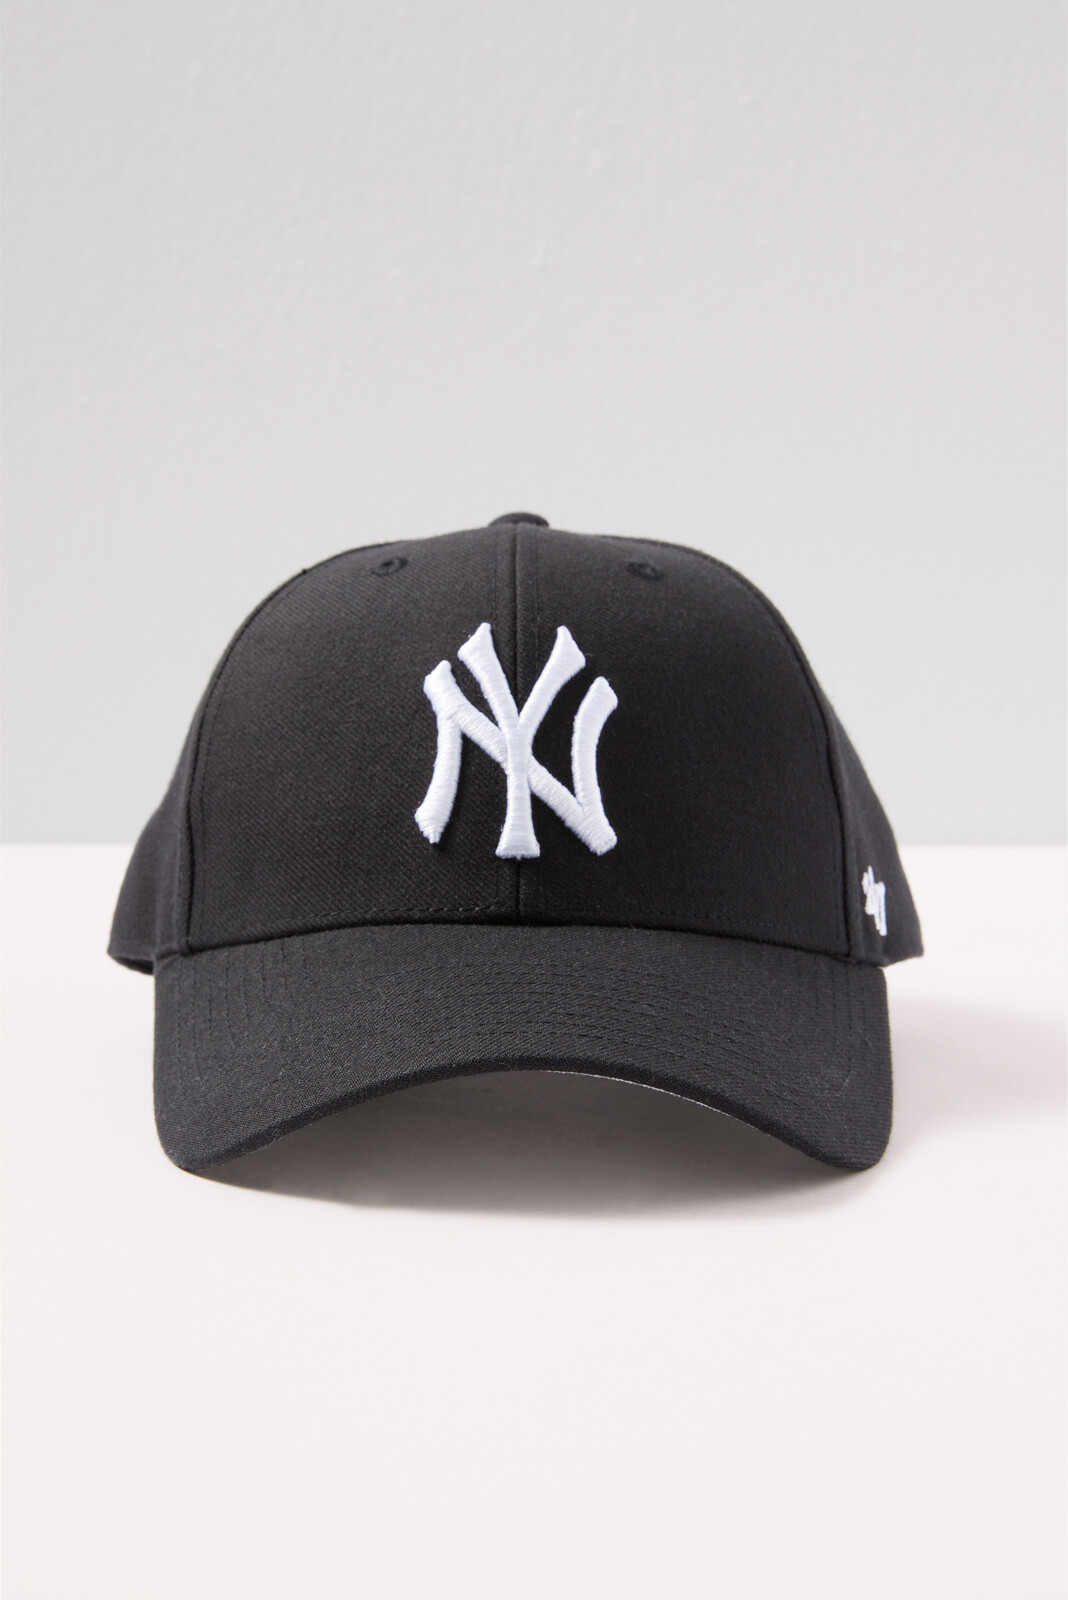 NY MVP Baseball Hat